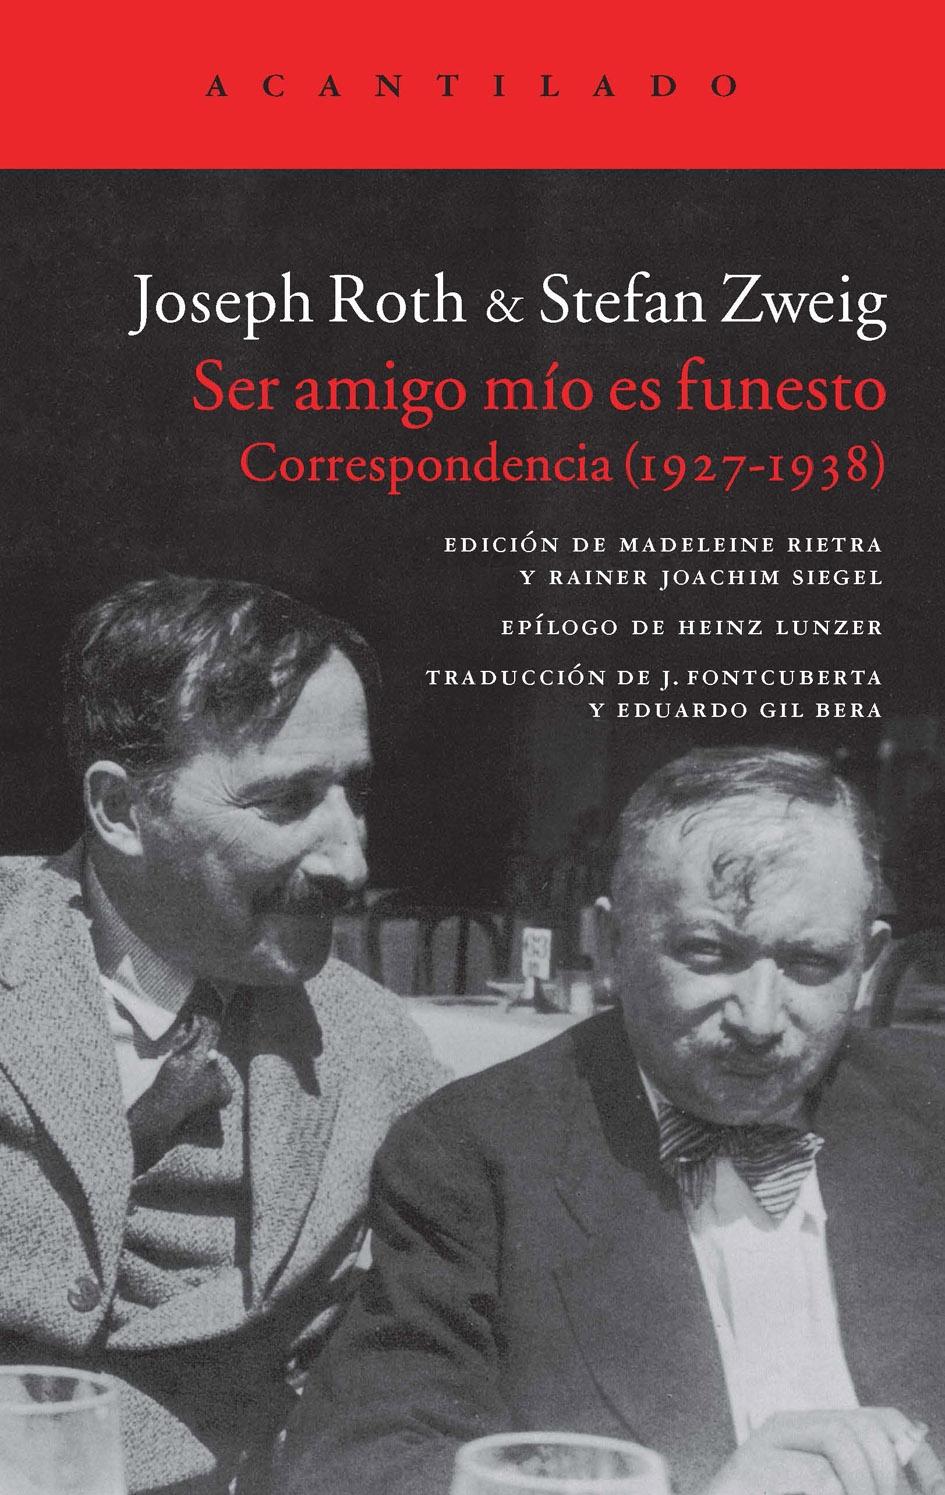 Ser amigo mío es funesto "Correspondencia (1927-1938) Joseph Roth & Stefan Zweig"